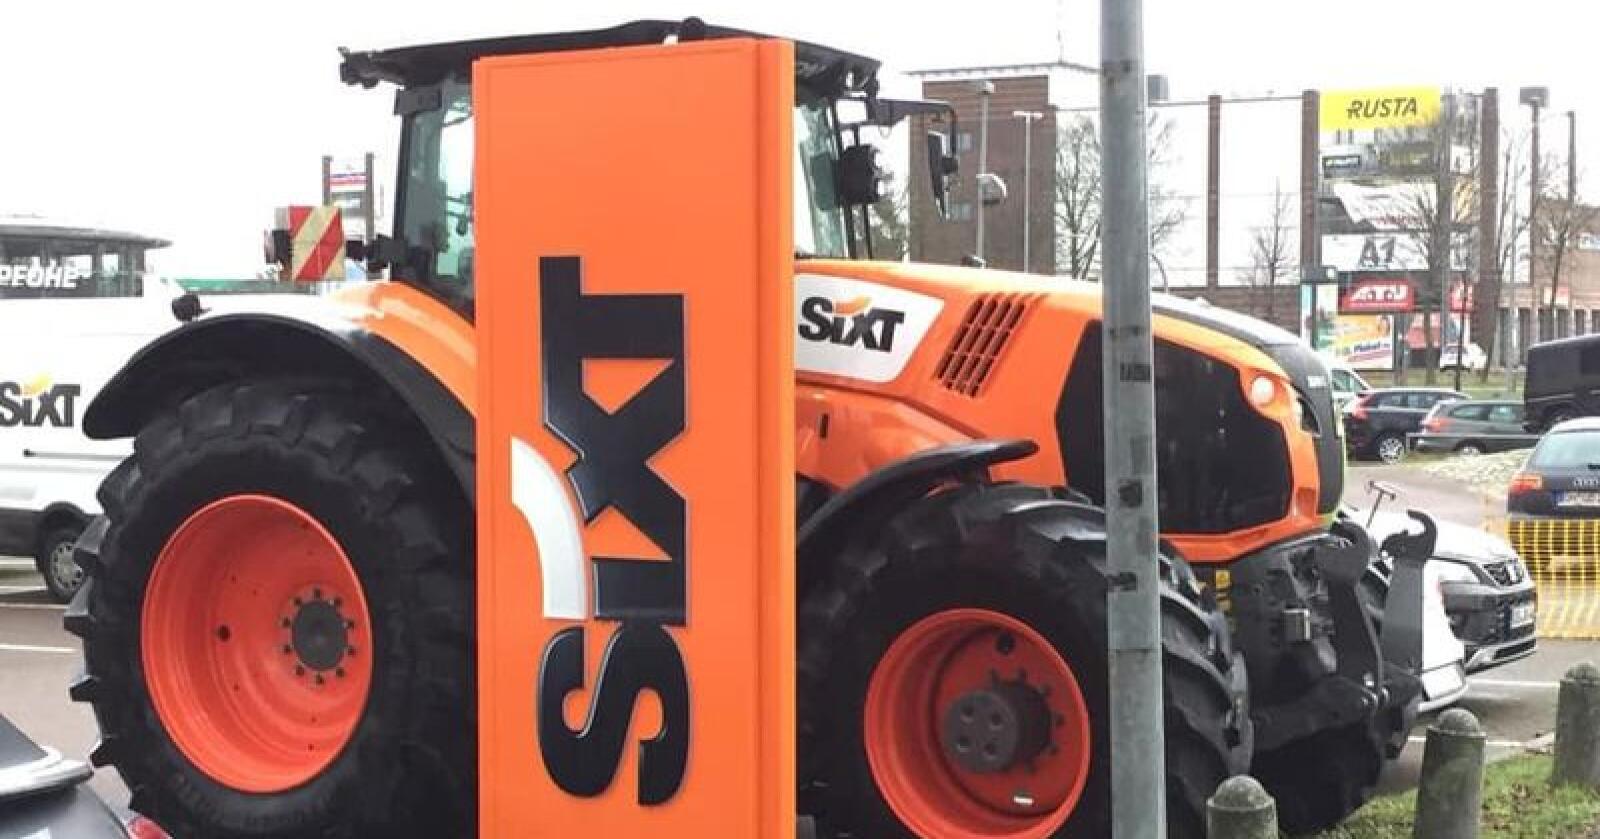 Utleietraktor: Traktoren har fått Sixt-profilering på den ene siden, og står parkert utenfor bilutleieselskapets avdeling i Lübeck. Skjermdump Facebook/Claas Bordesholm GmbH